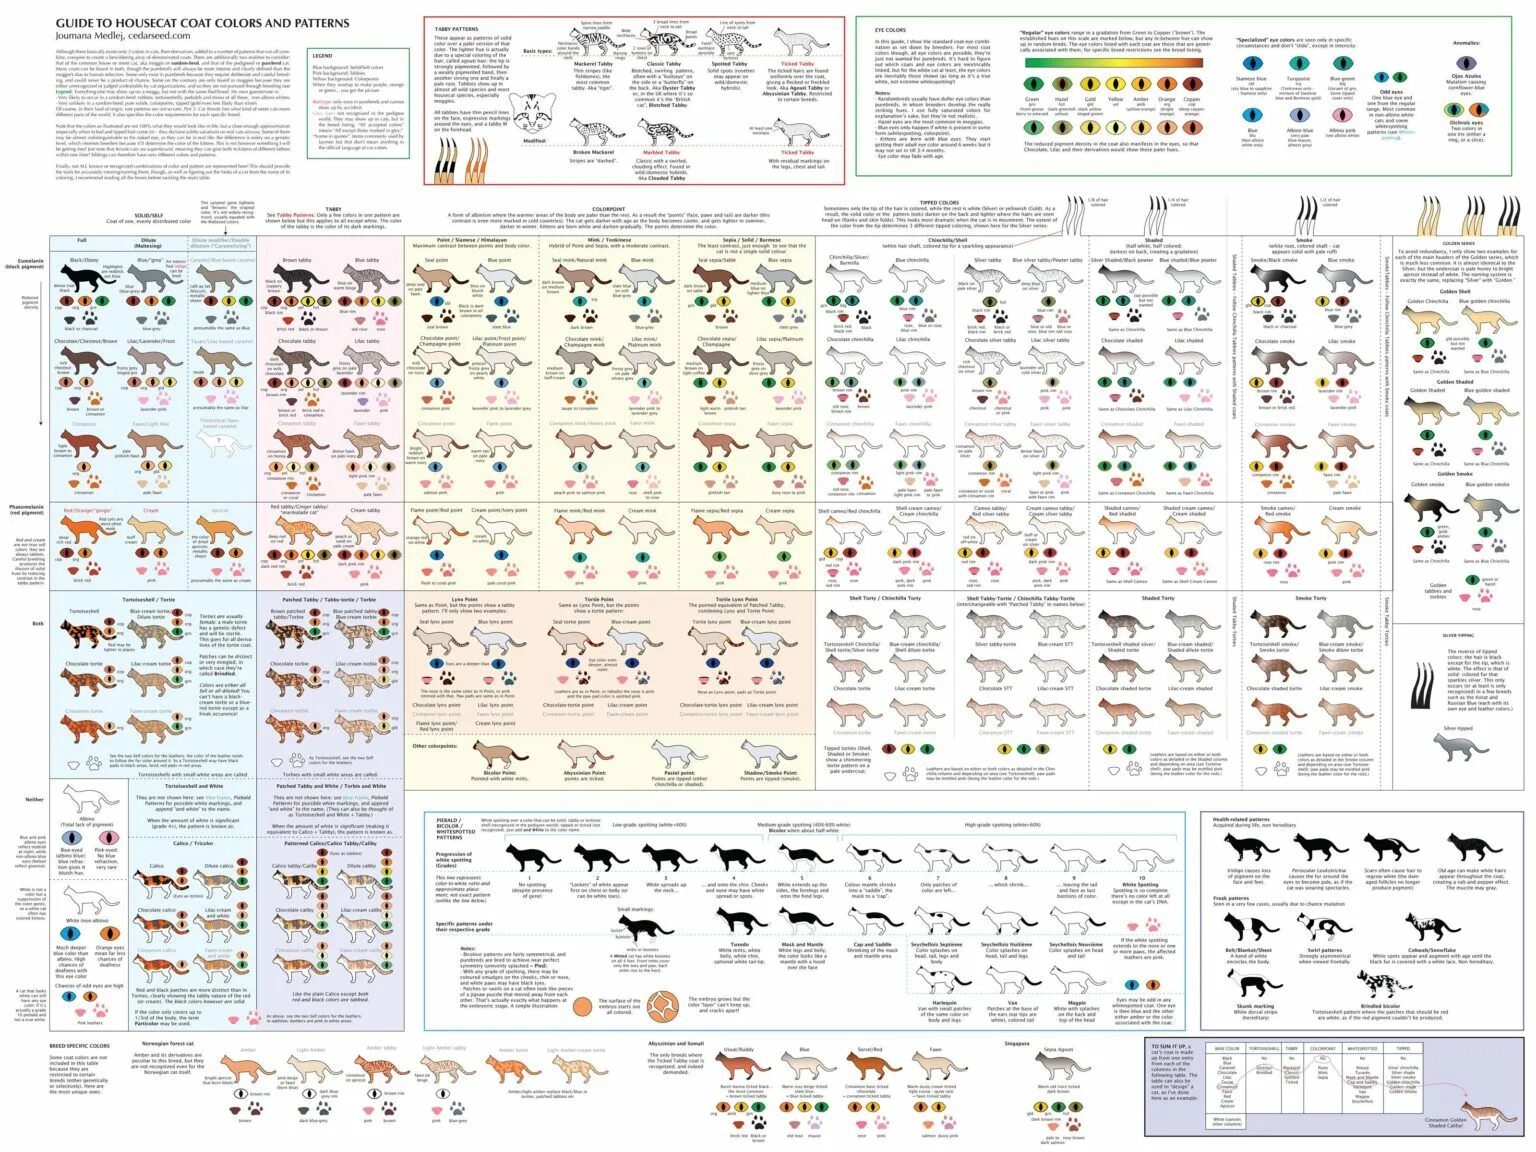 Окрас и тип шерсти кошек. Таблица генетики окрасов шотландских кошек. Окрасы шотландских кошек таблица. Атлас окрасов шотландских кошек. Классификация окраса шотландских кошек.